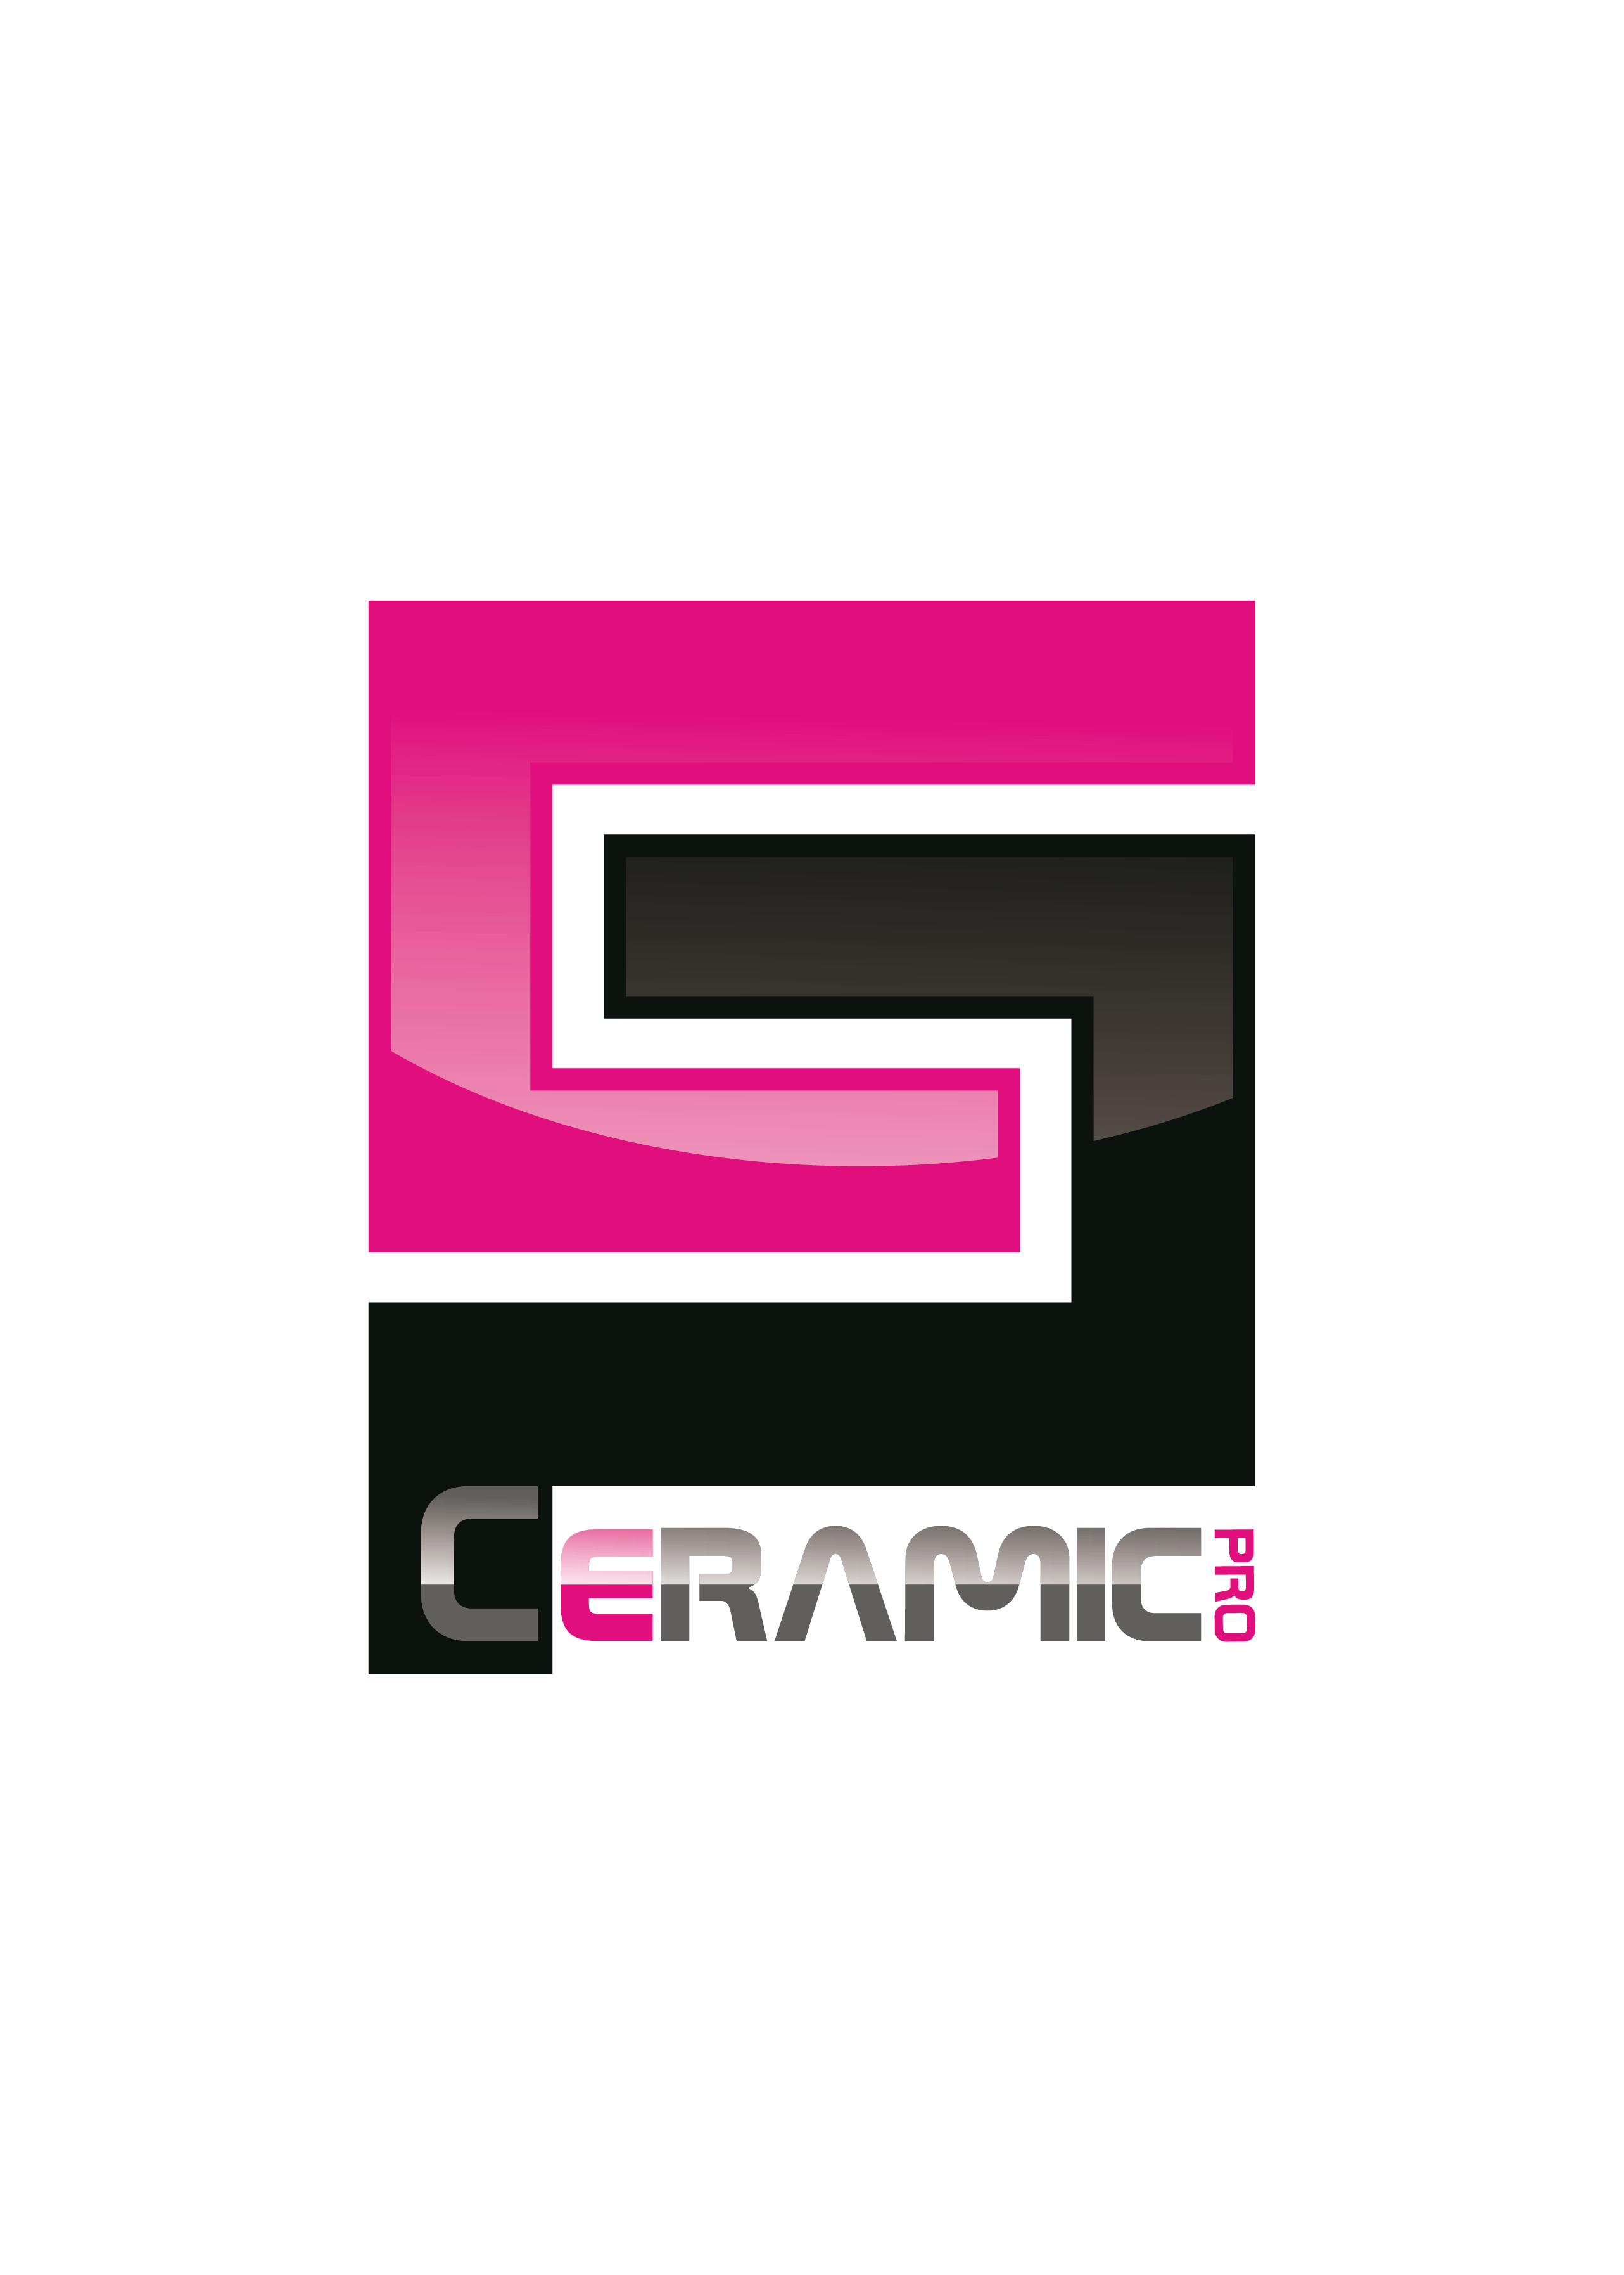 Ceramic Logo - CERAMIC PRO logo-01 – Ceramic Pro Singapore